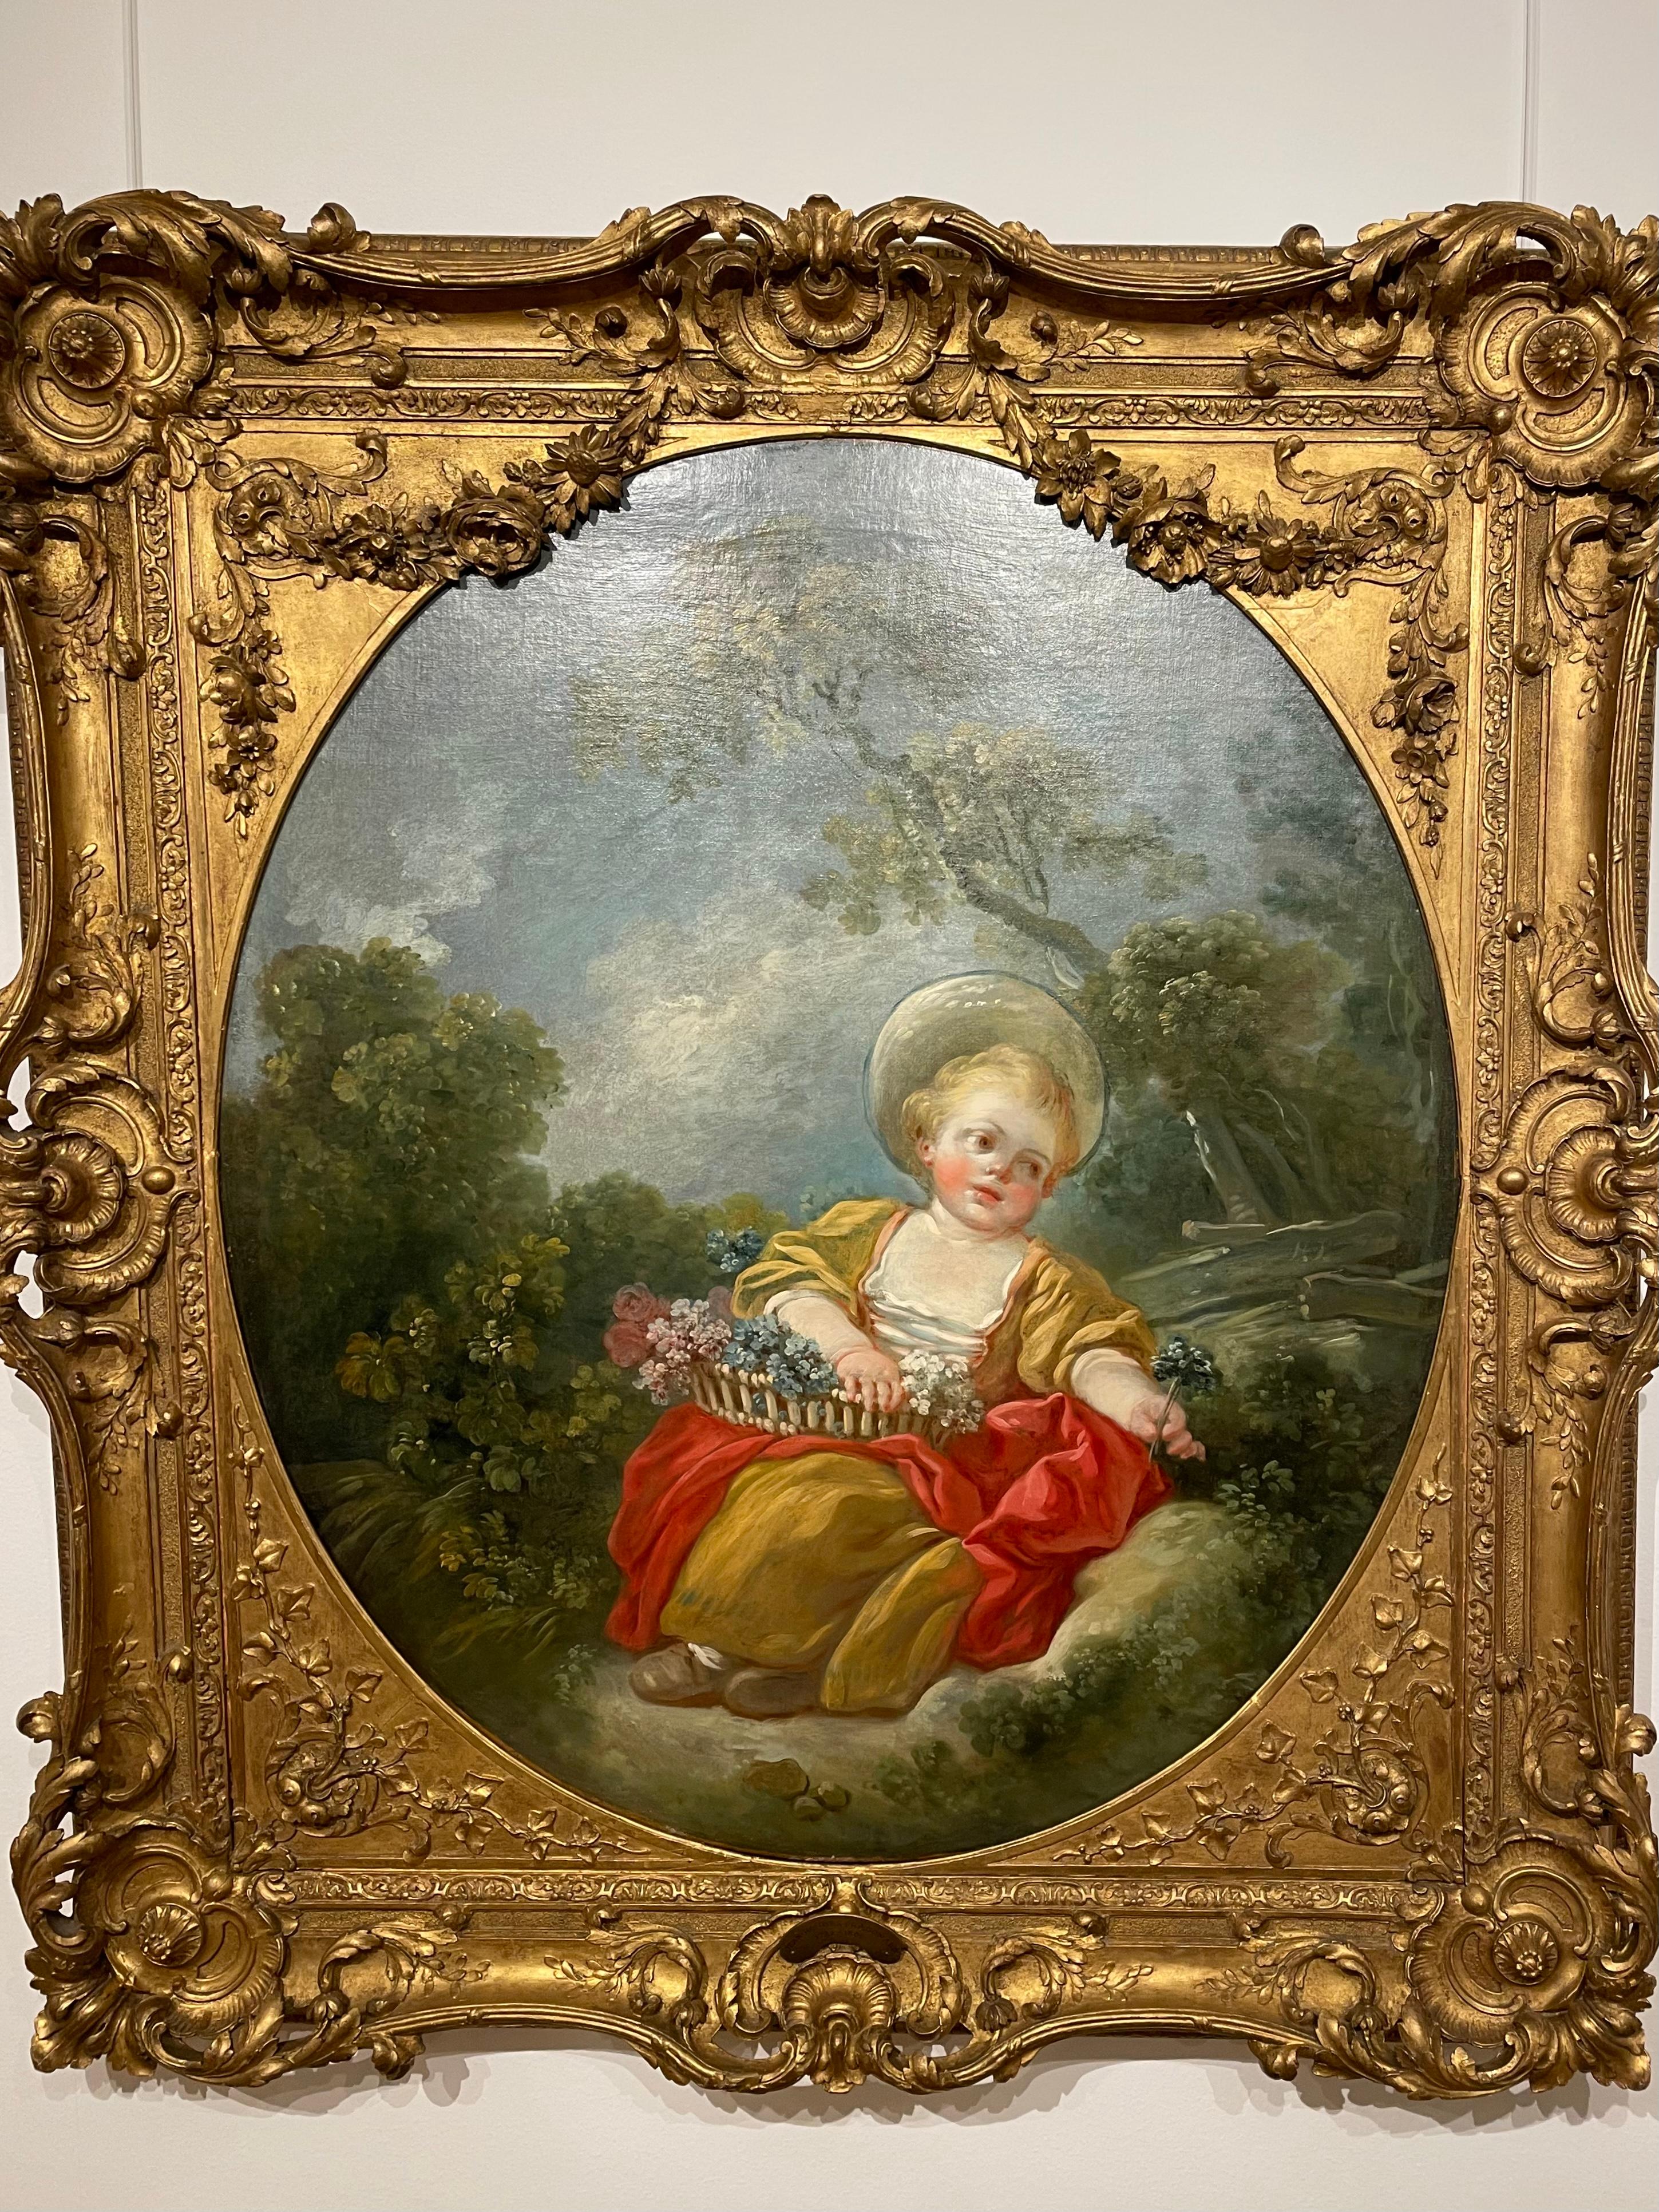 JEAN -HONORÉ FRAGONARD
(GRASSE, 1732 - PARIS, 1806)
La Petite Jardinière
Vers 1750 - 1760
Huile sur toile
98 x 85 cm.
Signé et monogrammé à droite
Certificat René Millet Expertise.